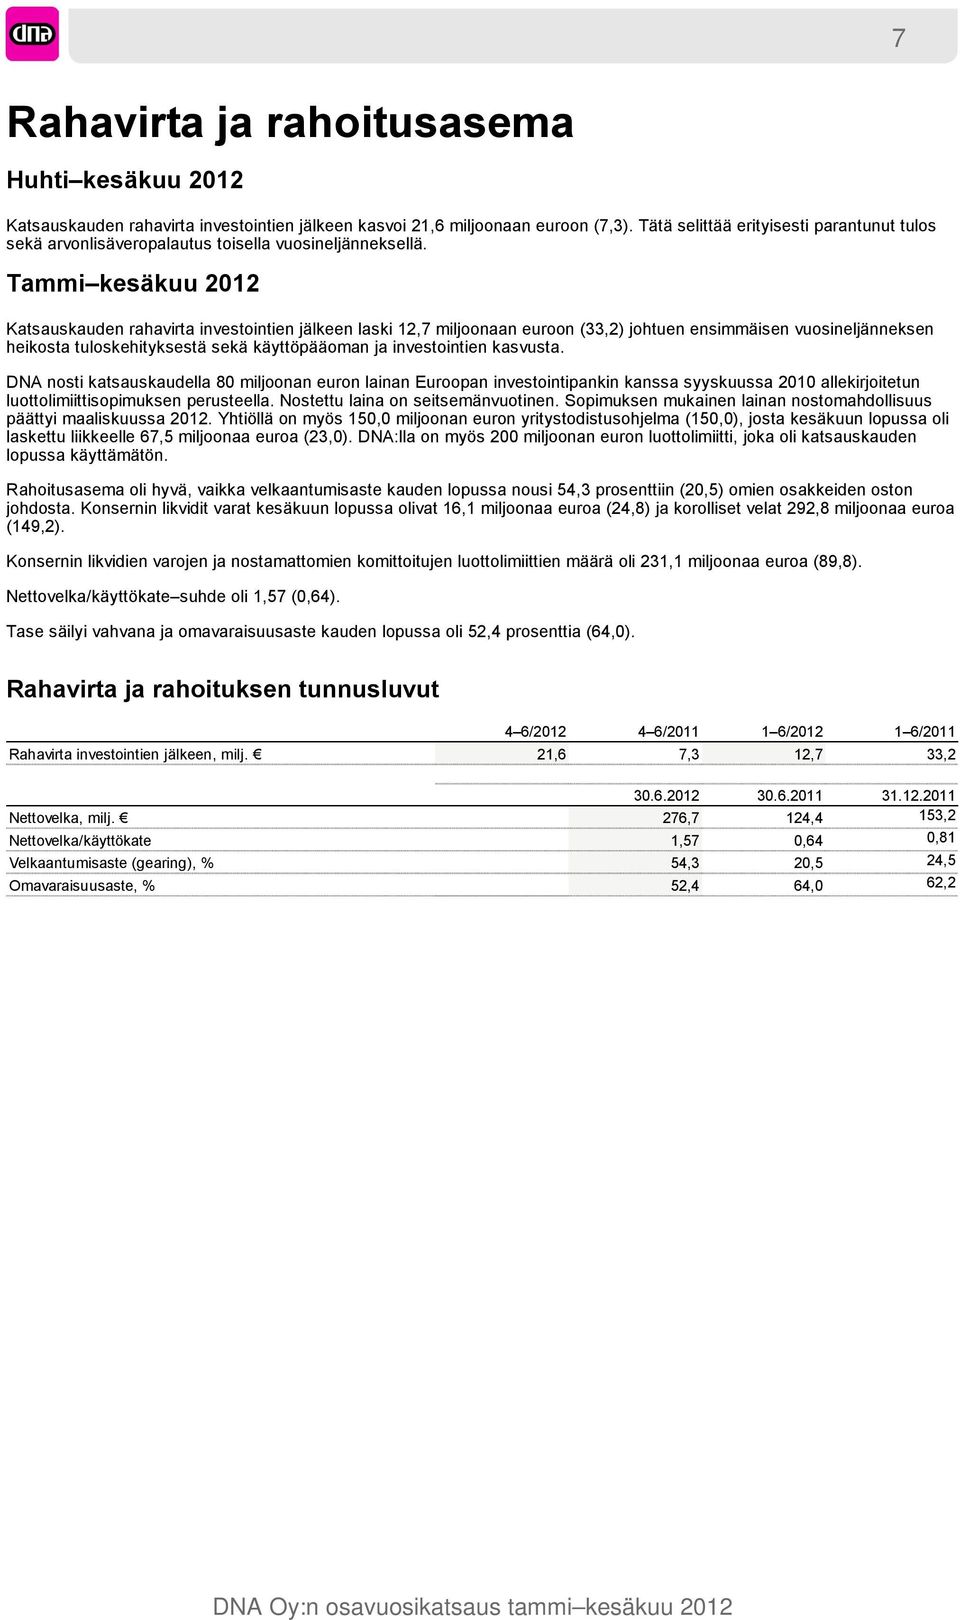 Tammi kesäkuu 2012 Katsauskauden rahavirta investointien jälkeen laski 12,7 miljoonaan euroon (33,2) johtuen ensimmäisen vuosineljänneksen heikosta tuloskehityksestä sekä käyttöpääoman ja